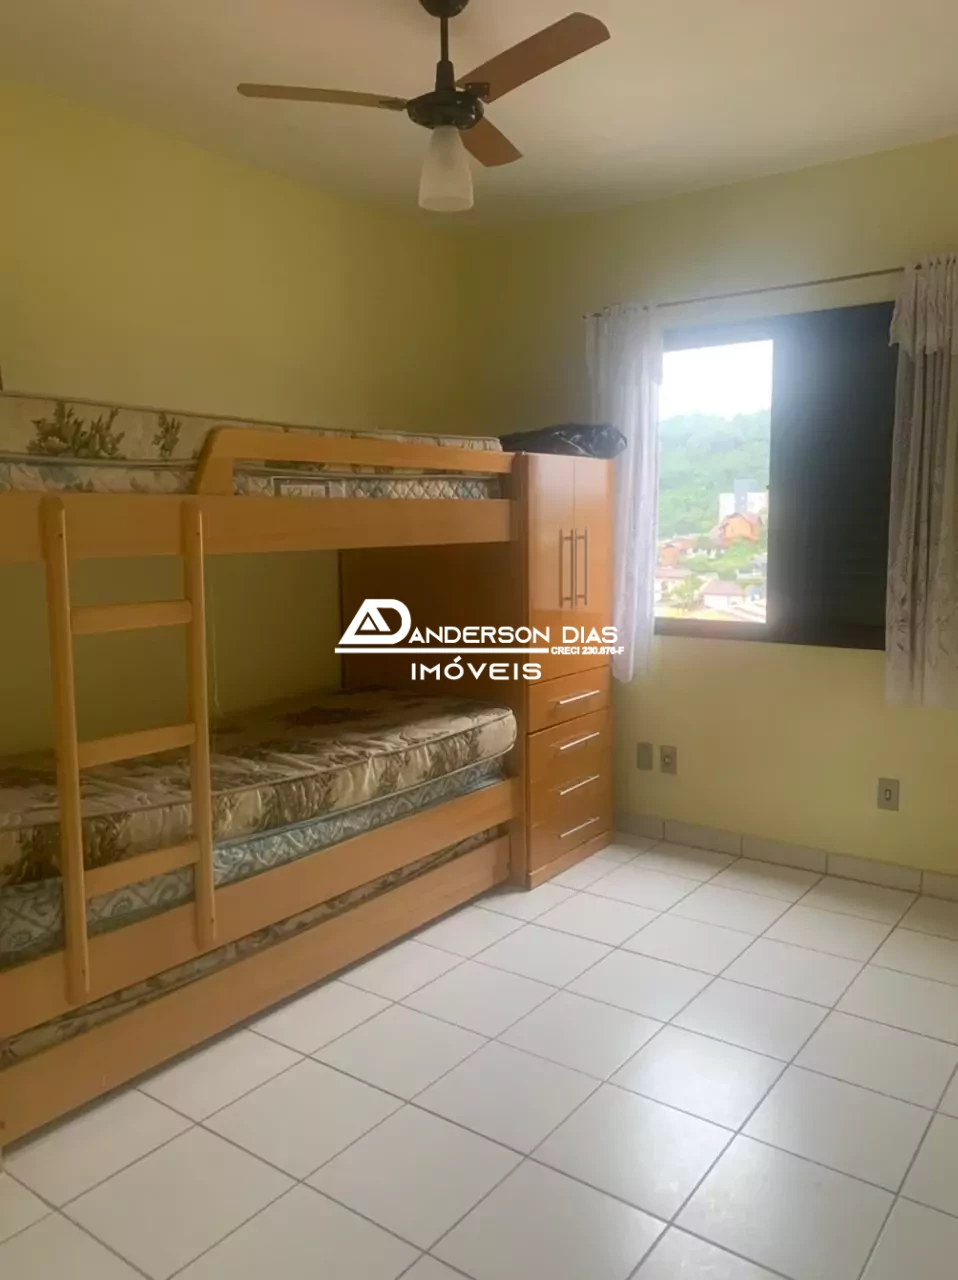 Apartamento com 2 dormitórios à venda, 68M² por R$ 370.000 - Martim de Sá - Caraguatatuba/SP